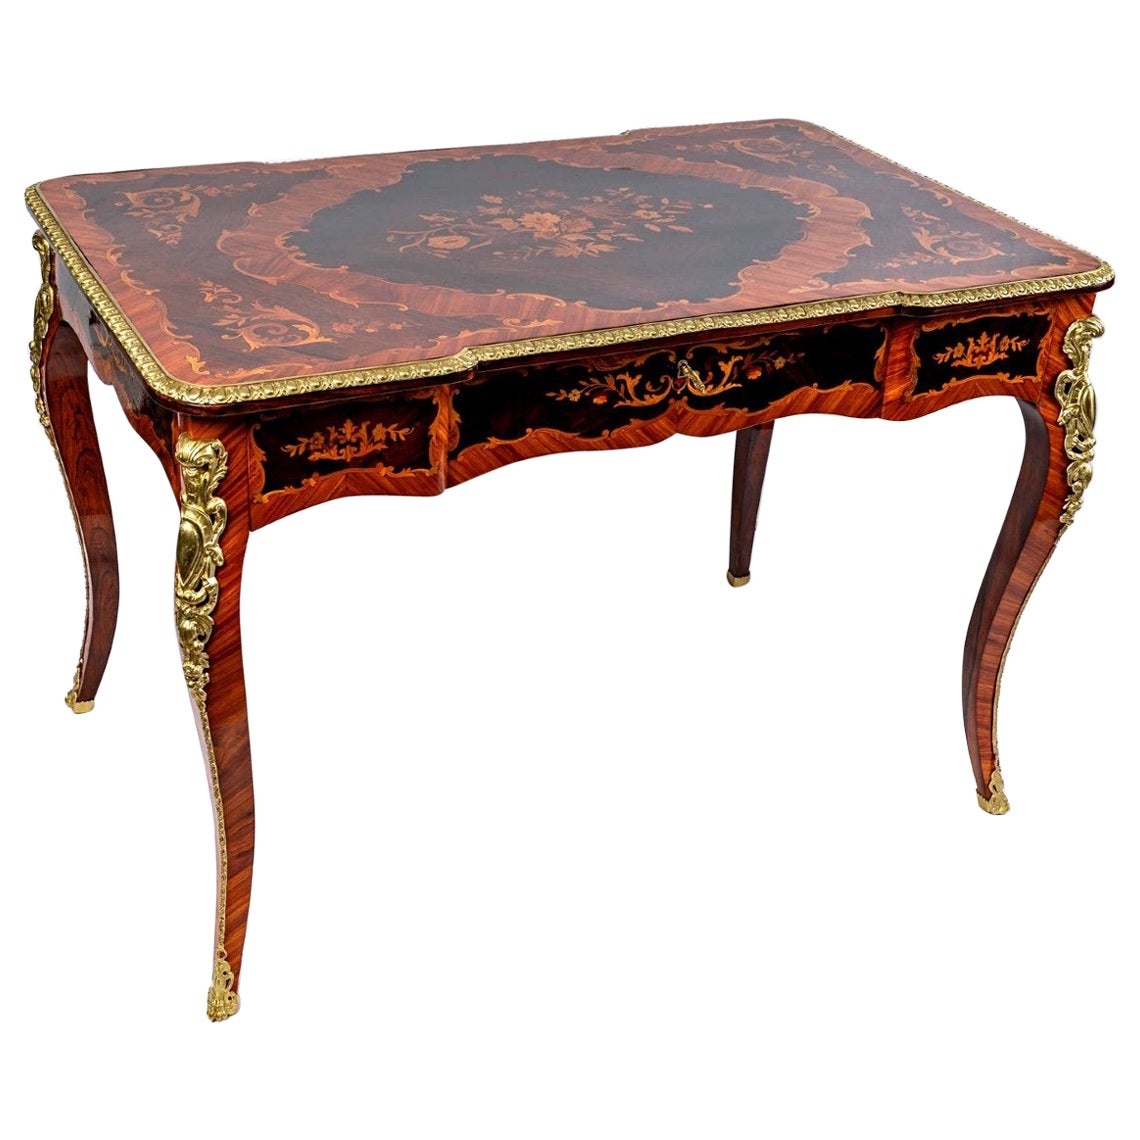 Magnifique bureau plat de style Louis XV - Marqueterie de bois précieux - Bronzes dorés